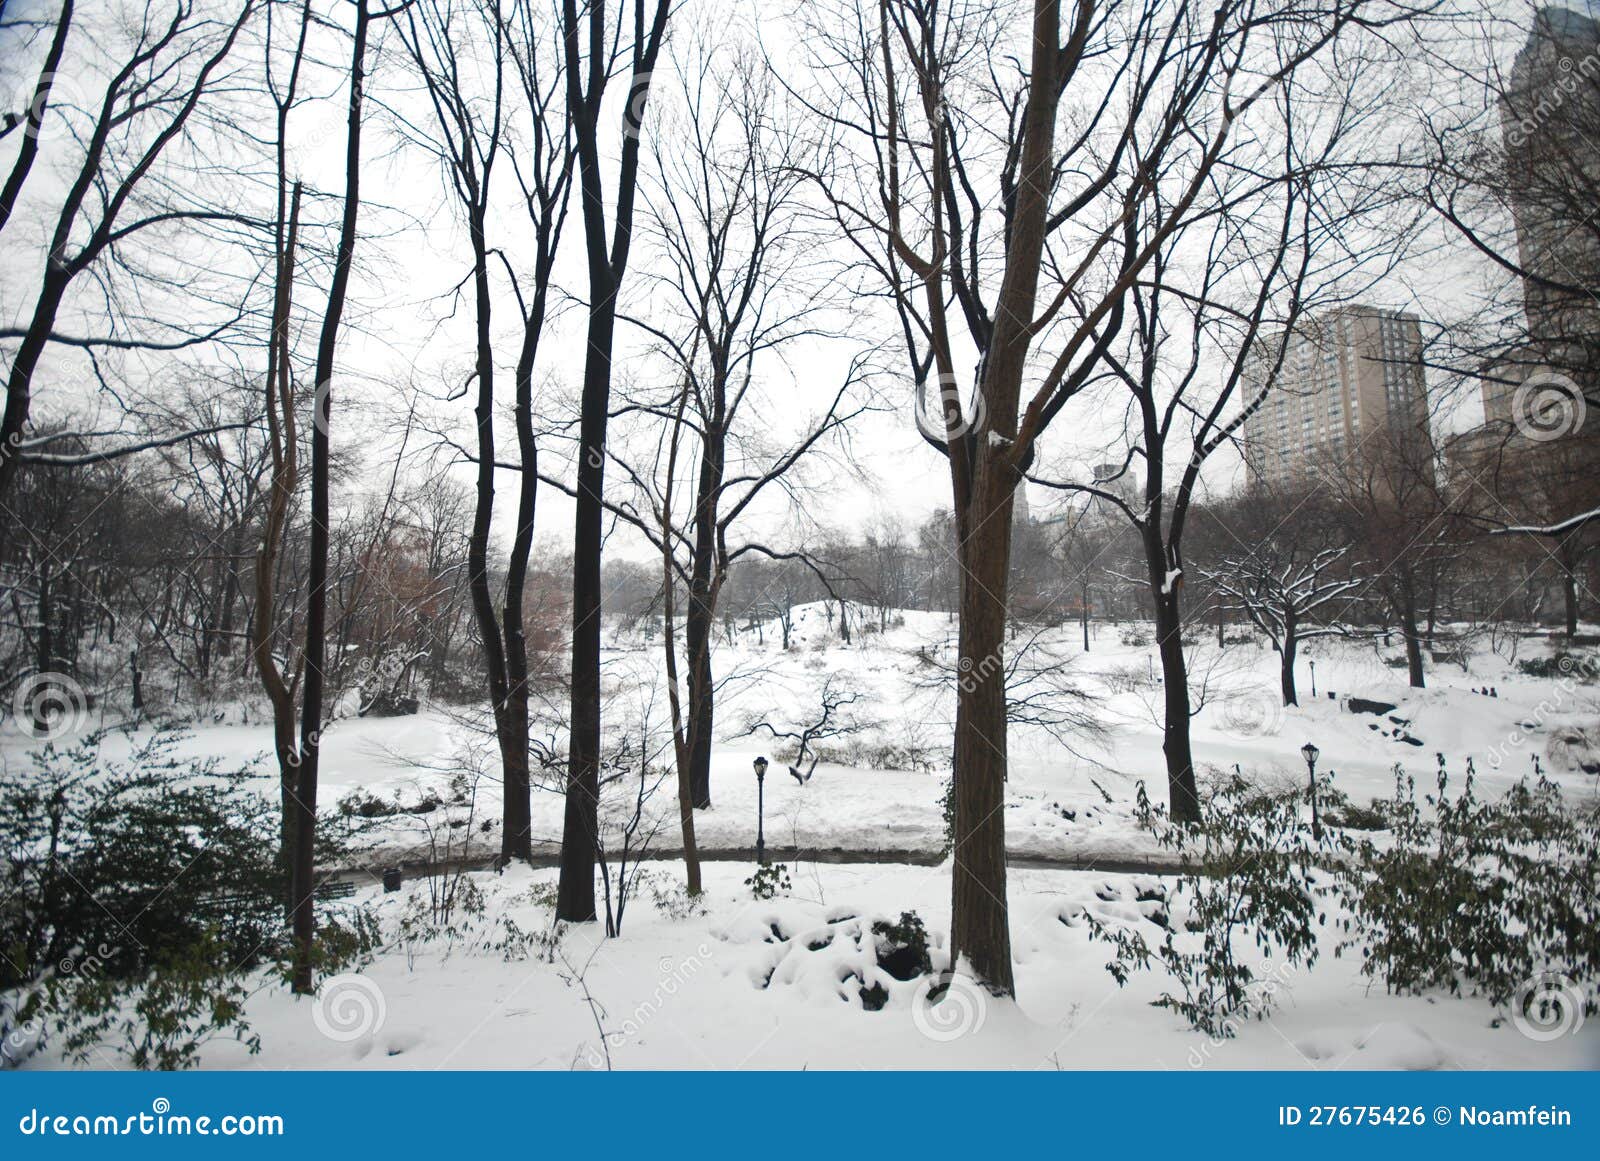 winter snow in central park, manhattan